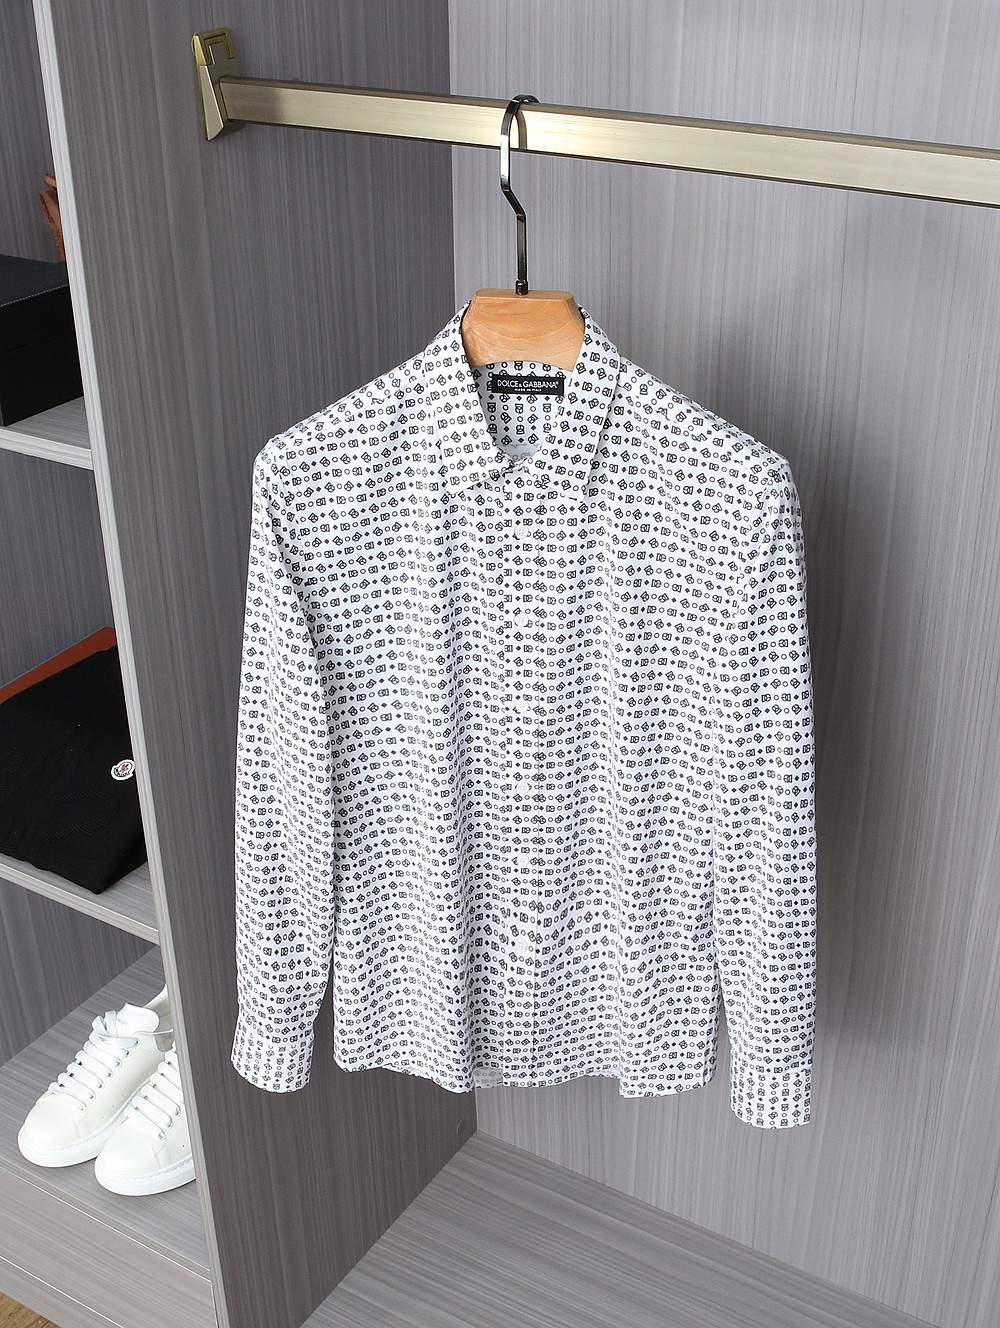 新品D&G男士经典数码系列时装款衬衫爆款来袭香港洋行渠道货明星级人气限量单品专柜同款销售！一个以独特的服